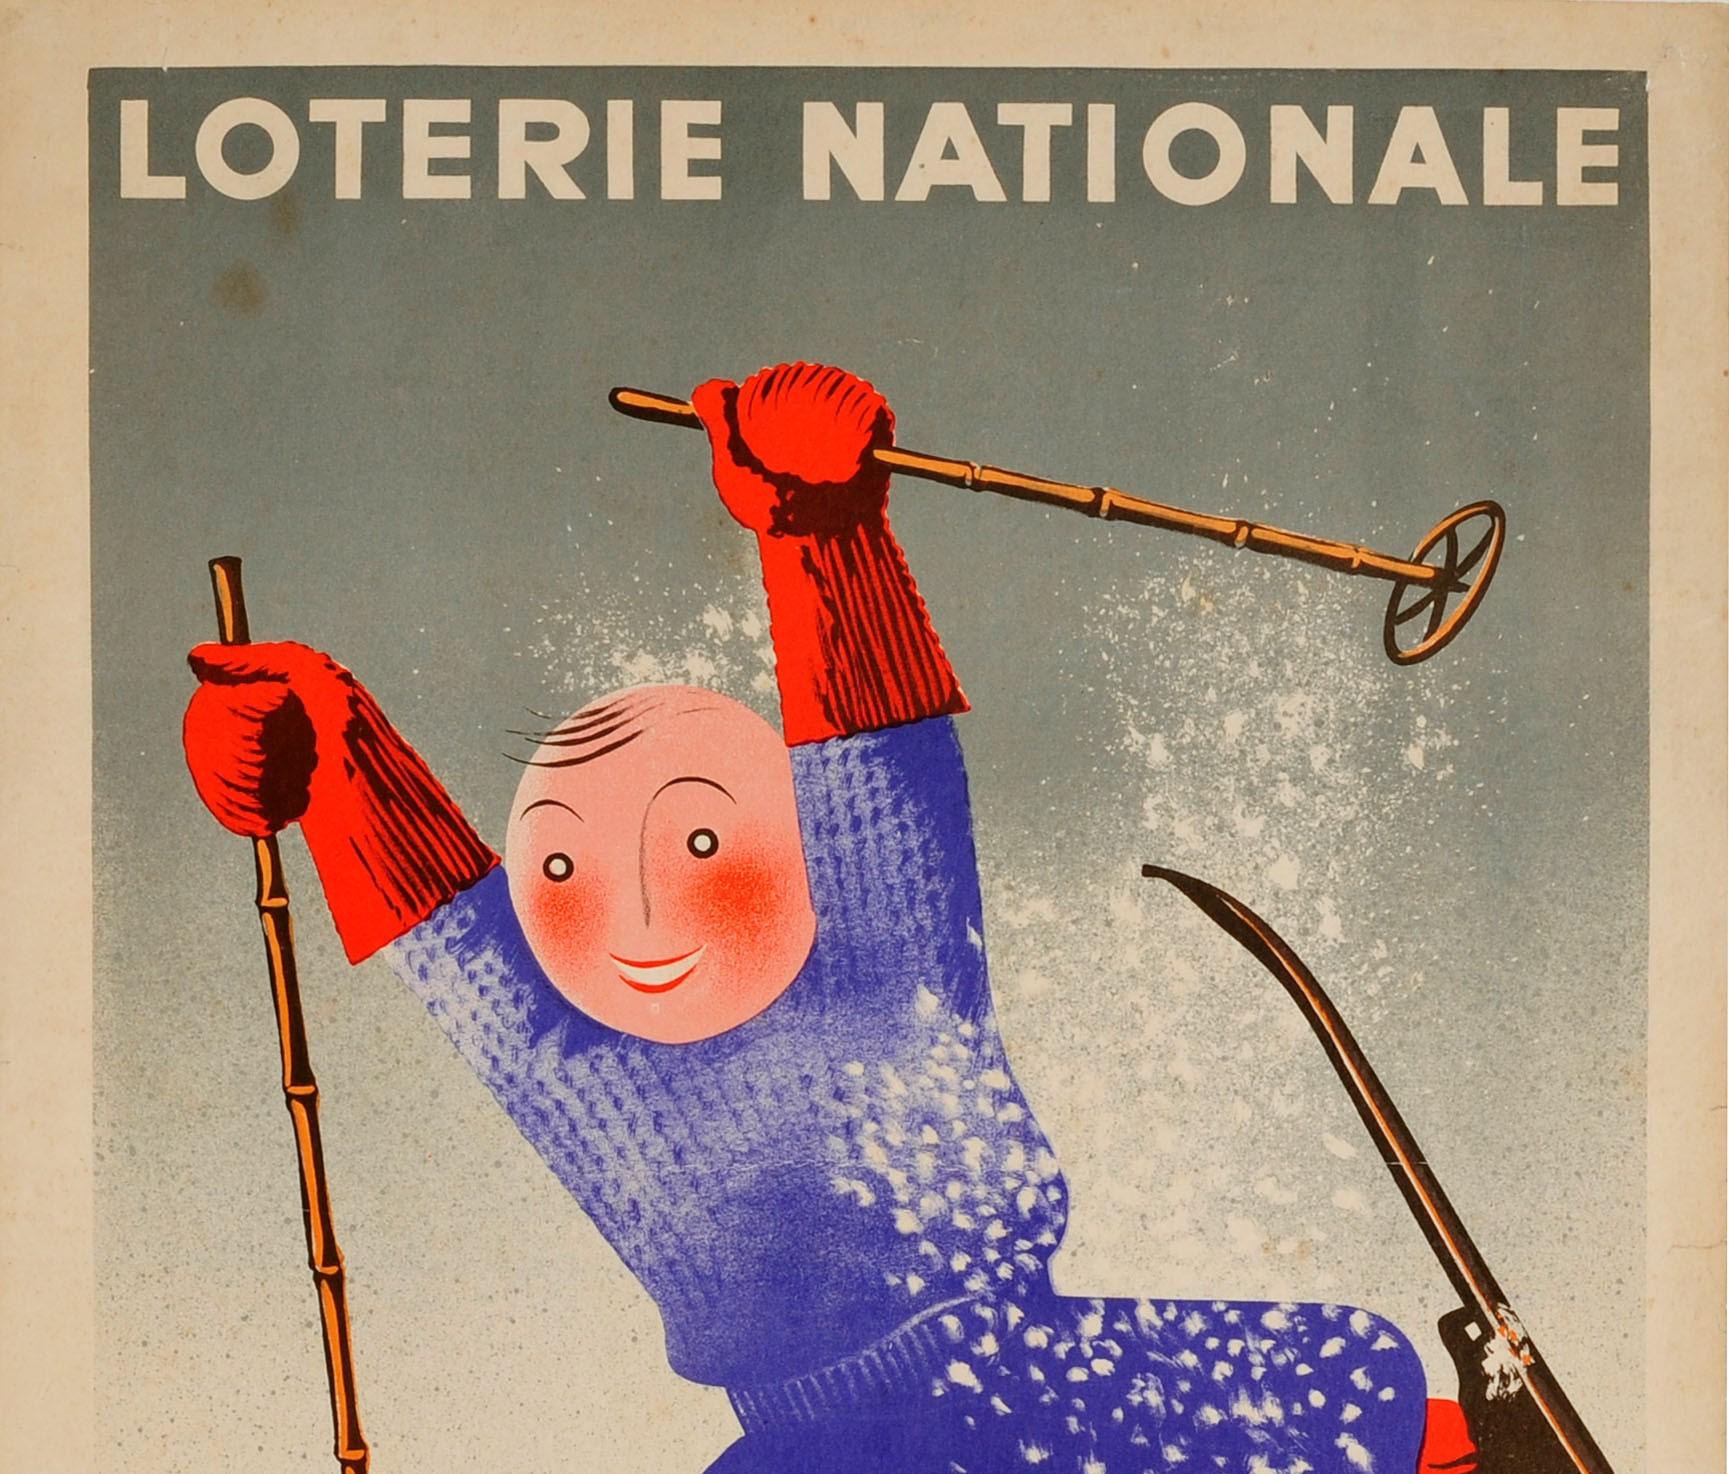 Affiche publicitaire originale d'époque pour la Loterie Nationale française tranche spéciale des Sports d'Hiver - Loterie Nationale Sports d'Hiver tranche spéciale des Sports d'Hiver - présentant un dessin amusant d'Edgar Derouet (1910-2001) et